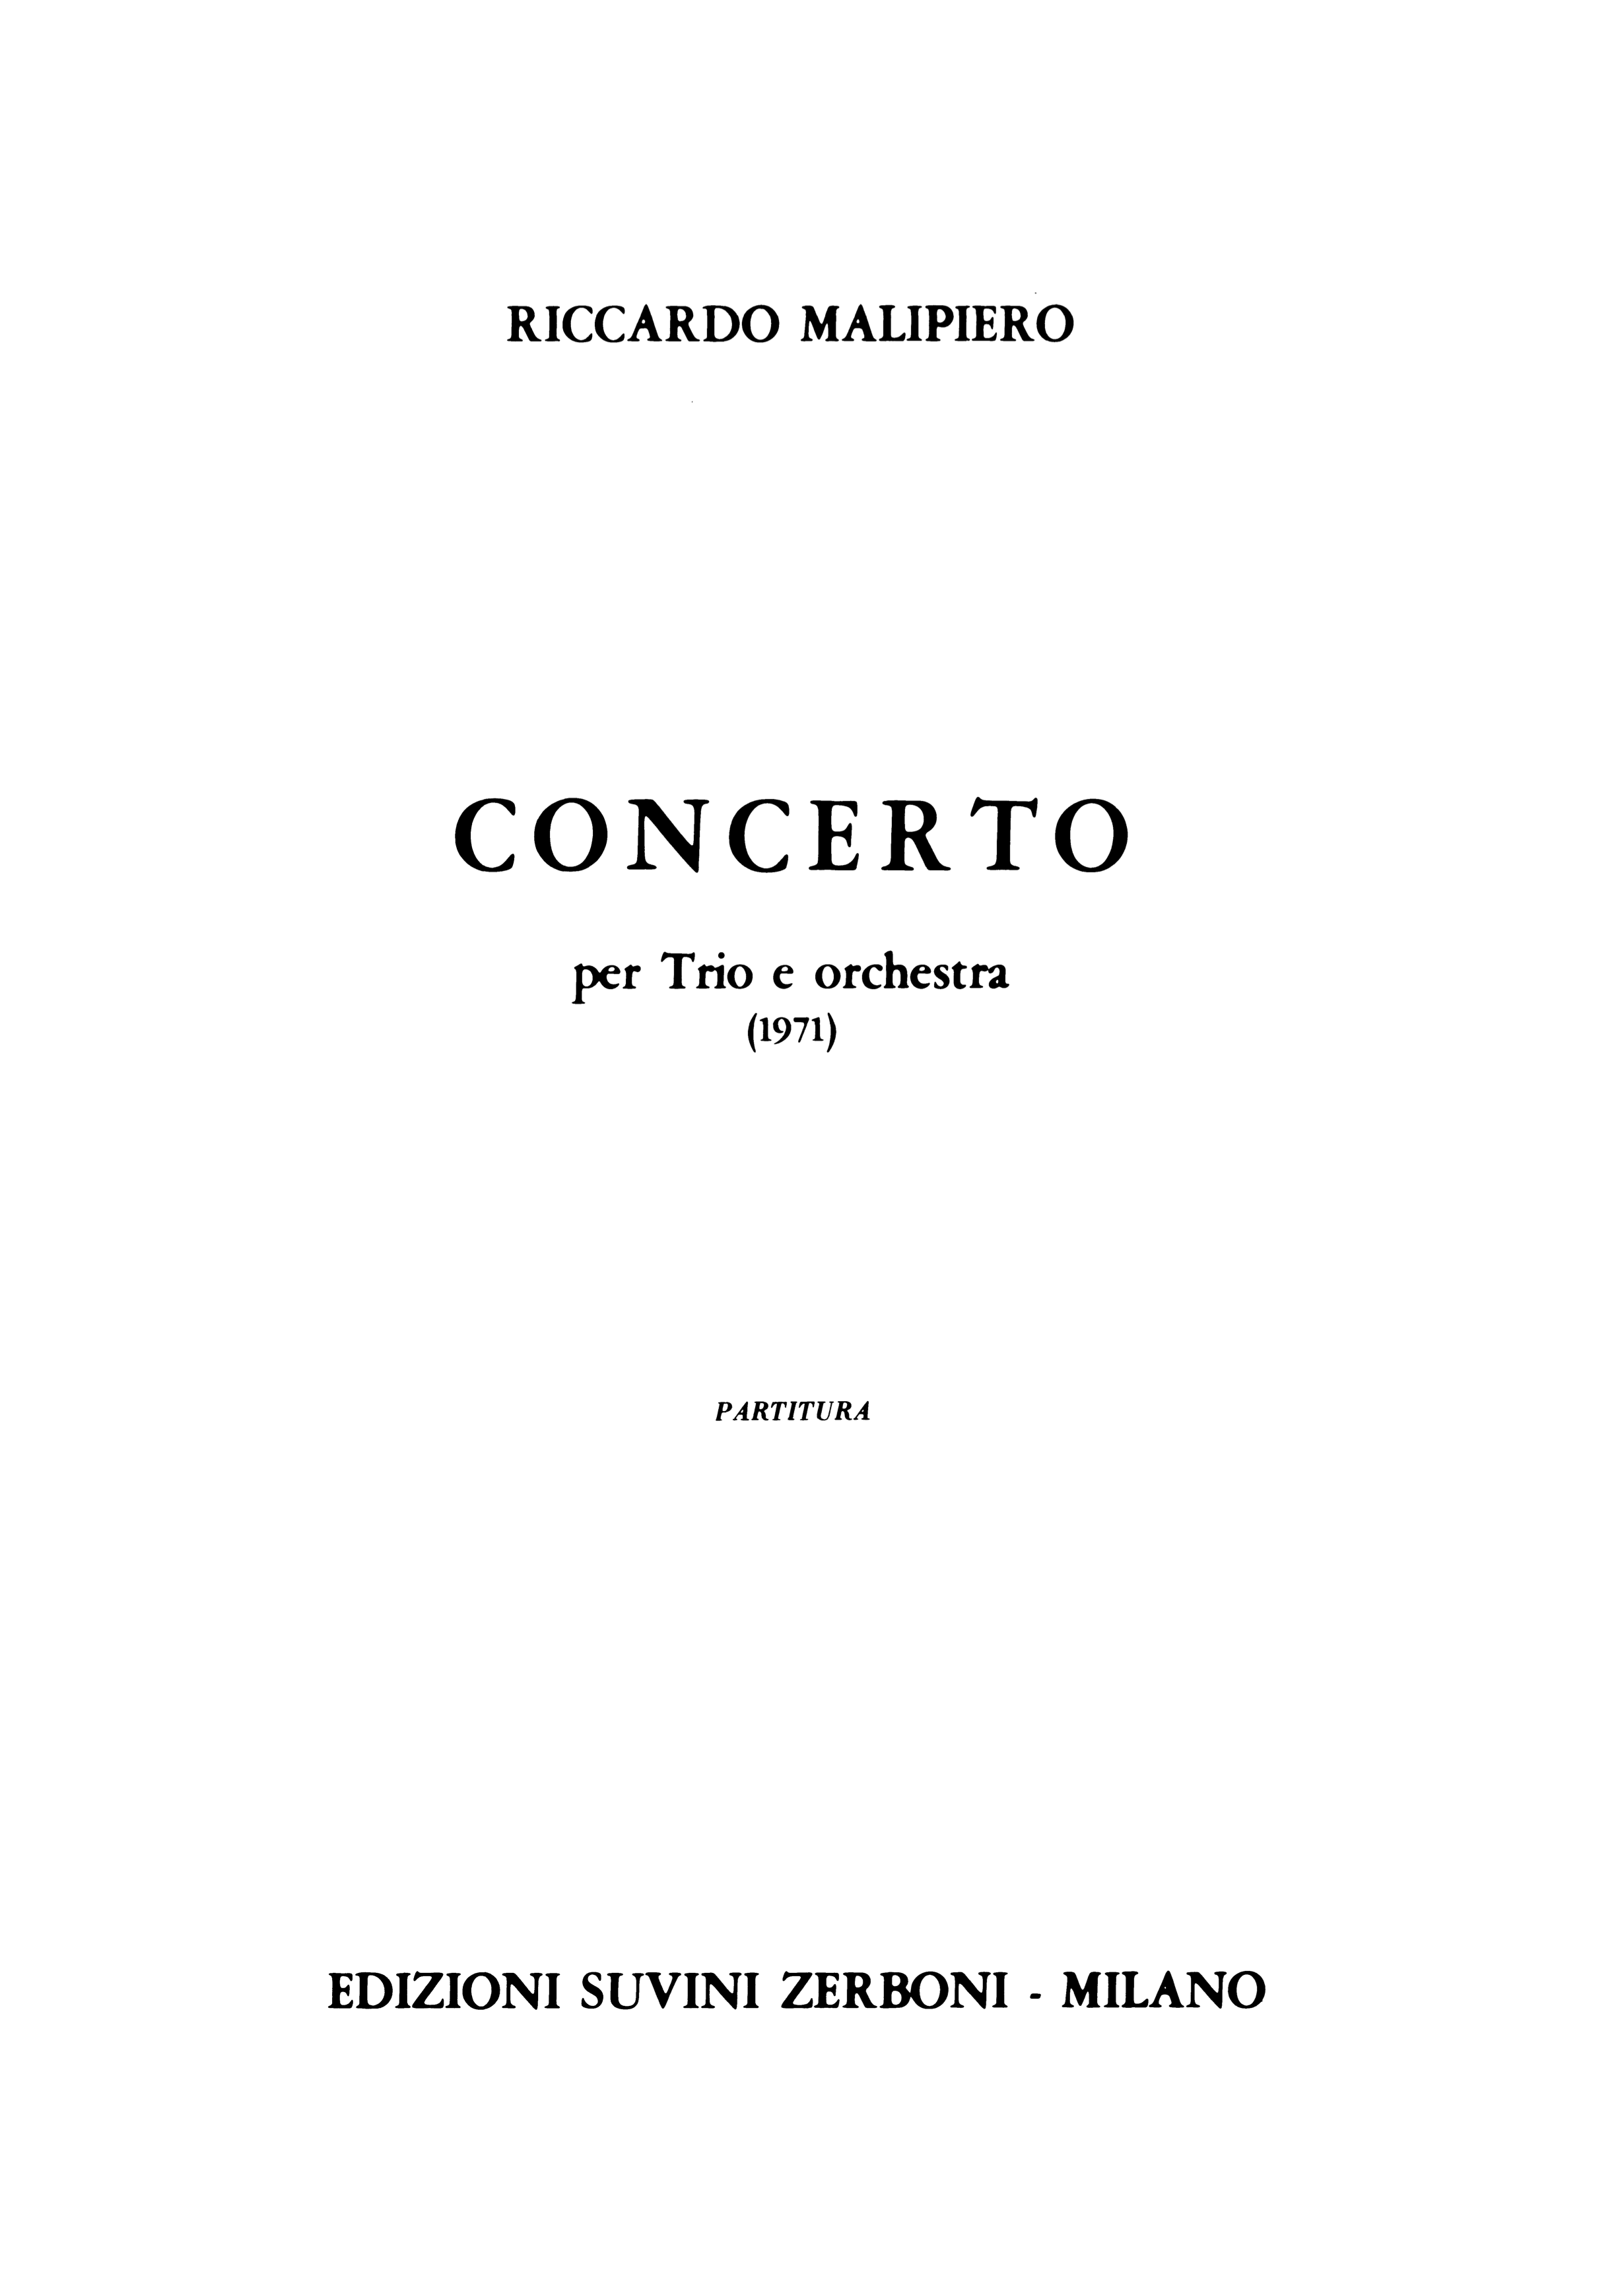 Concerto per Trio e Orchestra_Malipiero Riccardo 1